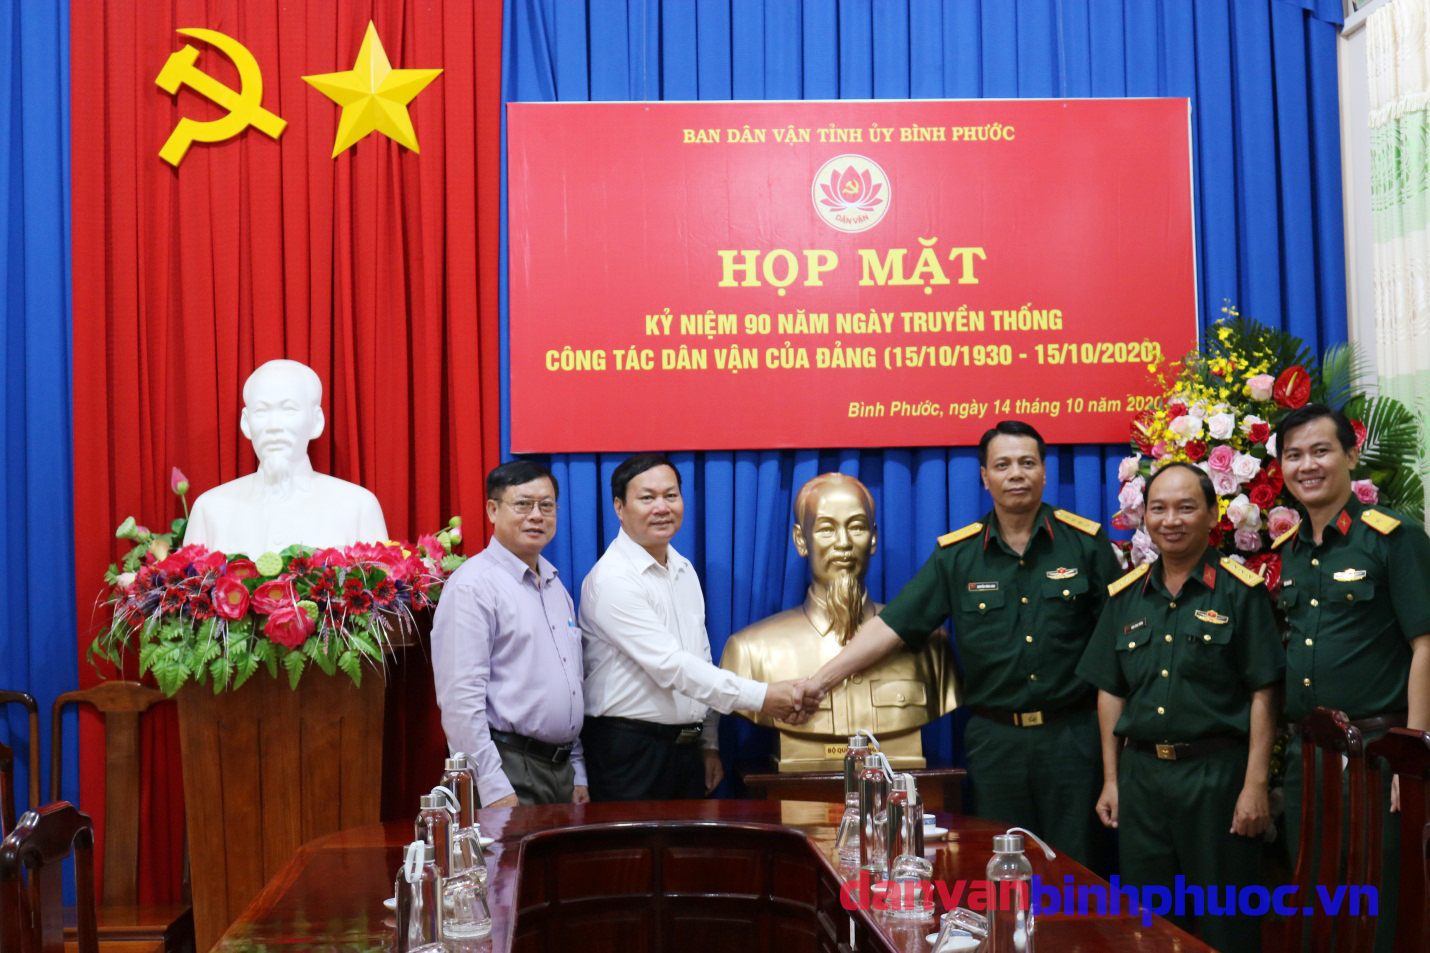 Đồng chí  Trịnh Thanh Tuệ - Phó Trưởng Ban Dân vận Tỉnh ủy nhận hoa và tượng Bác tại buổi gặp mặt